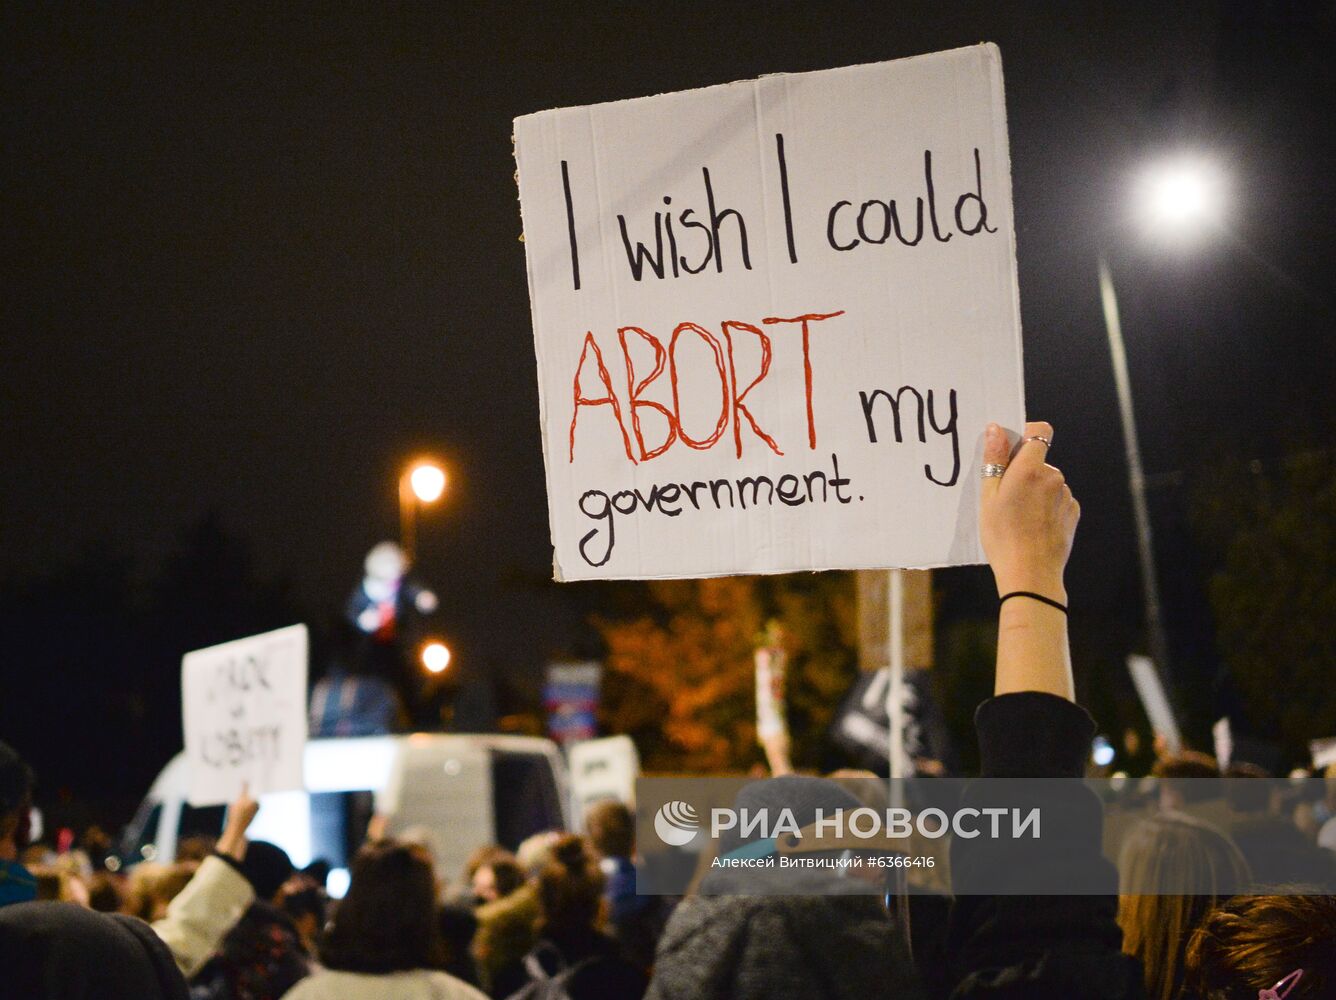 Акция в против запрета абортов в Варшаве